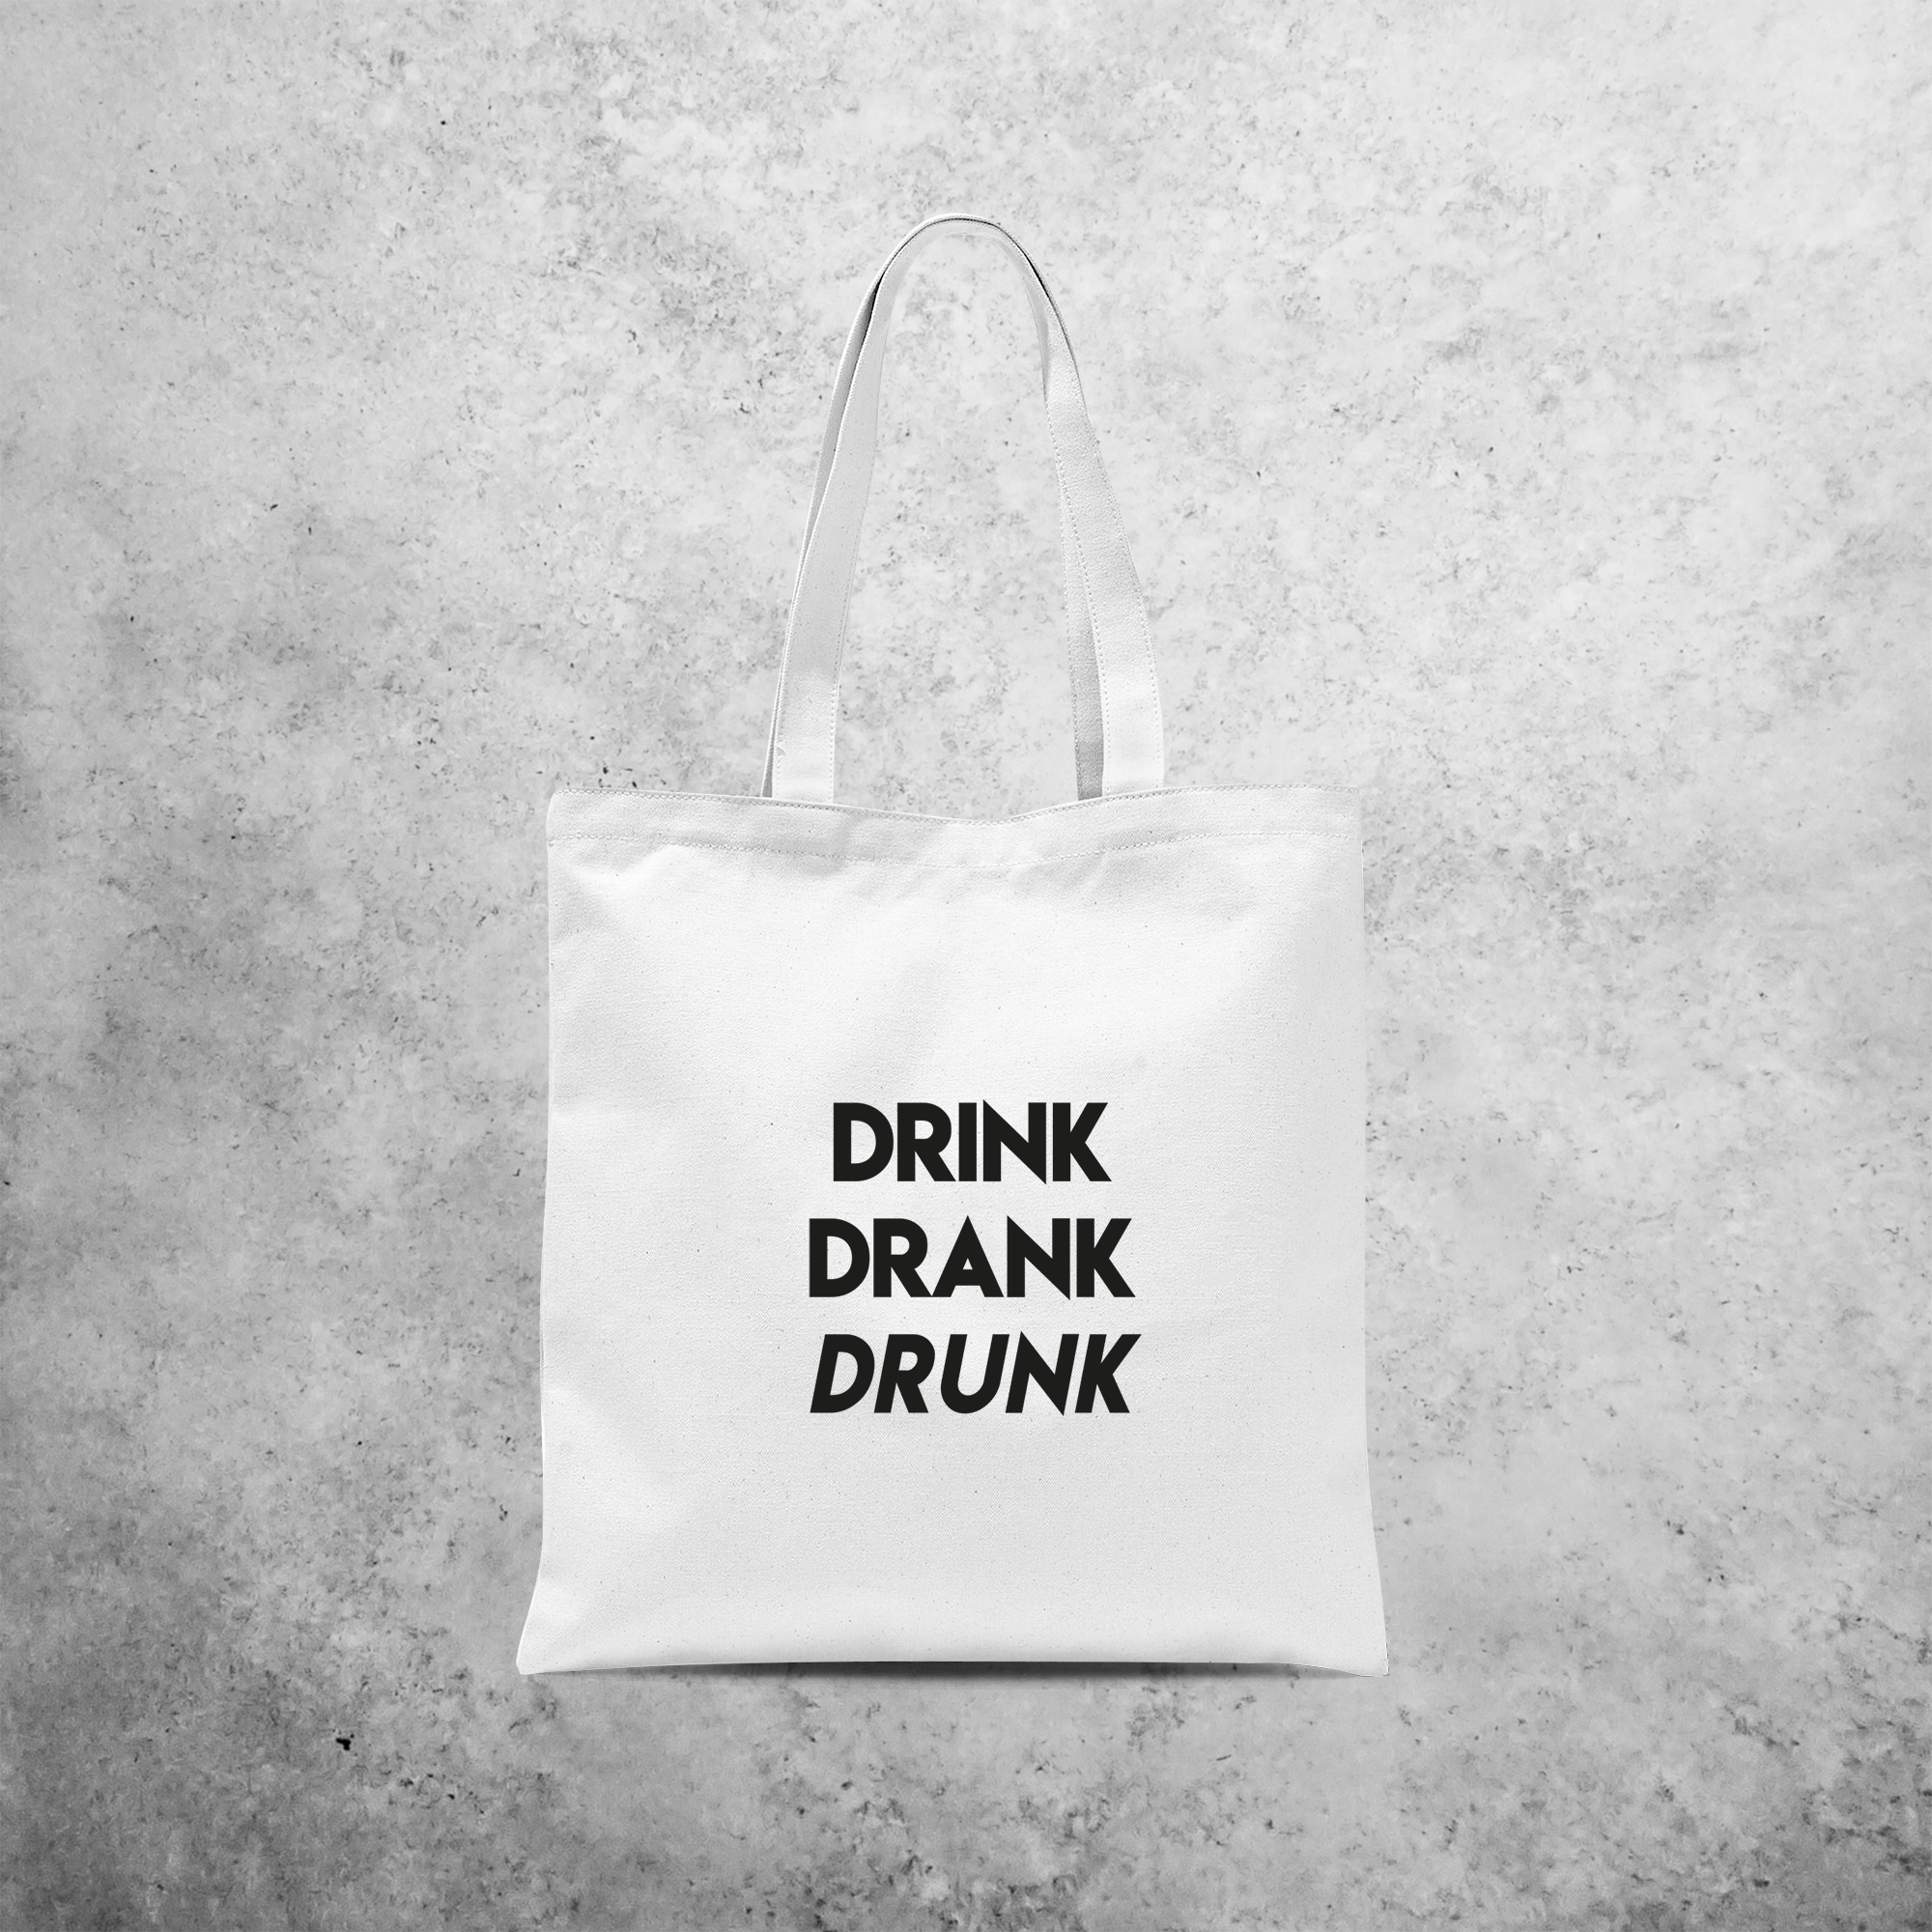 'Drink / Drank / Drunk' tote bag